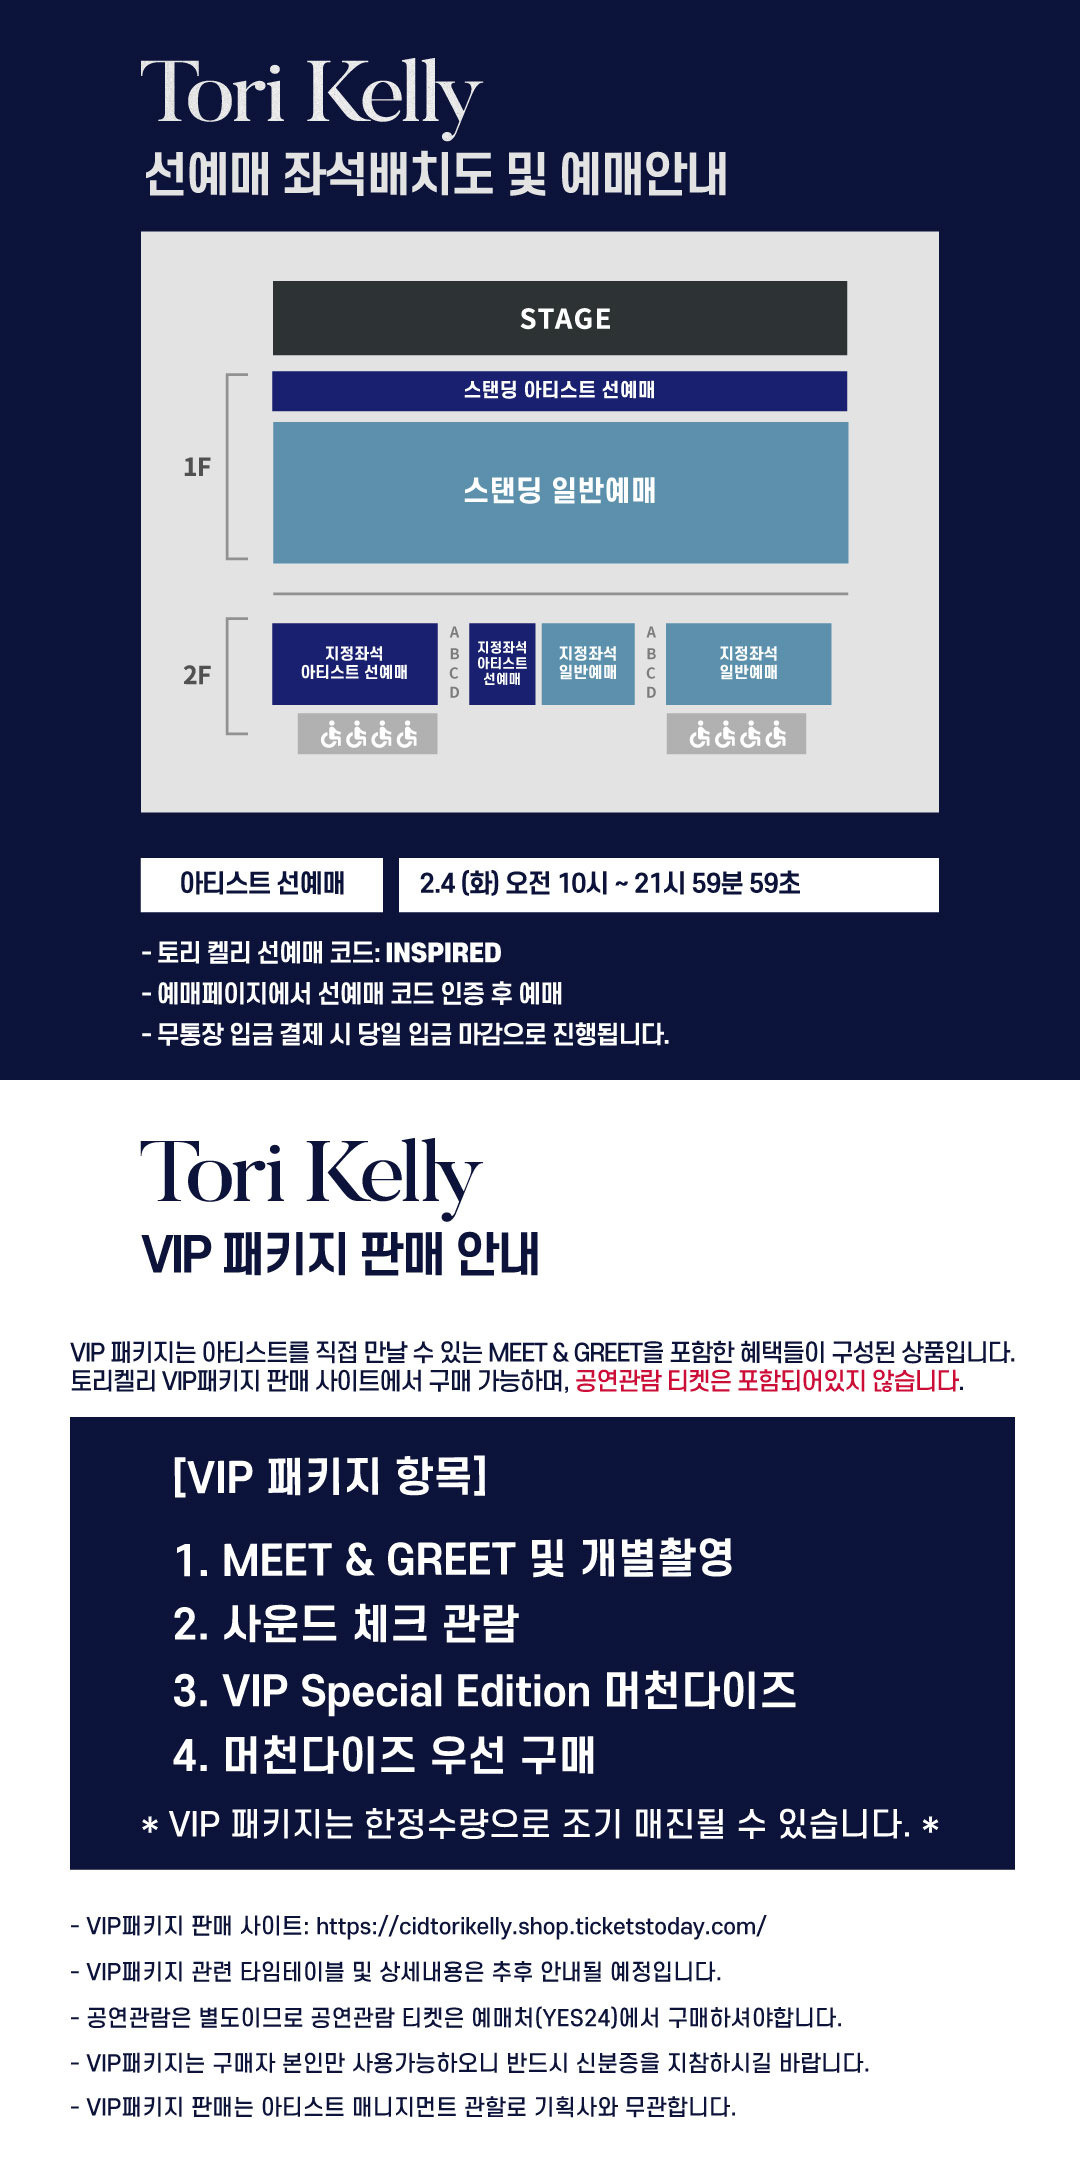 [티켓오픈&VIP 패키지] TORI KELLY 1ST LIVE IN SEOUL 2020